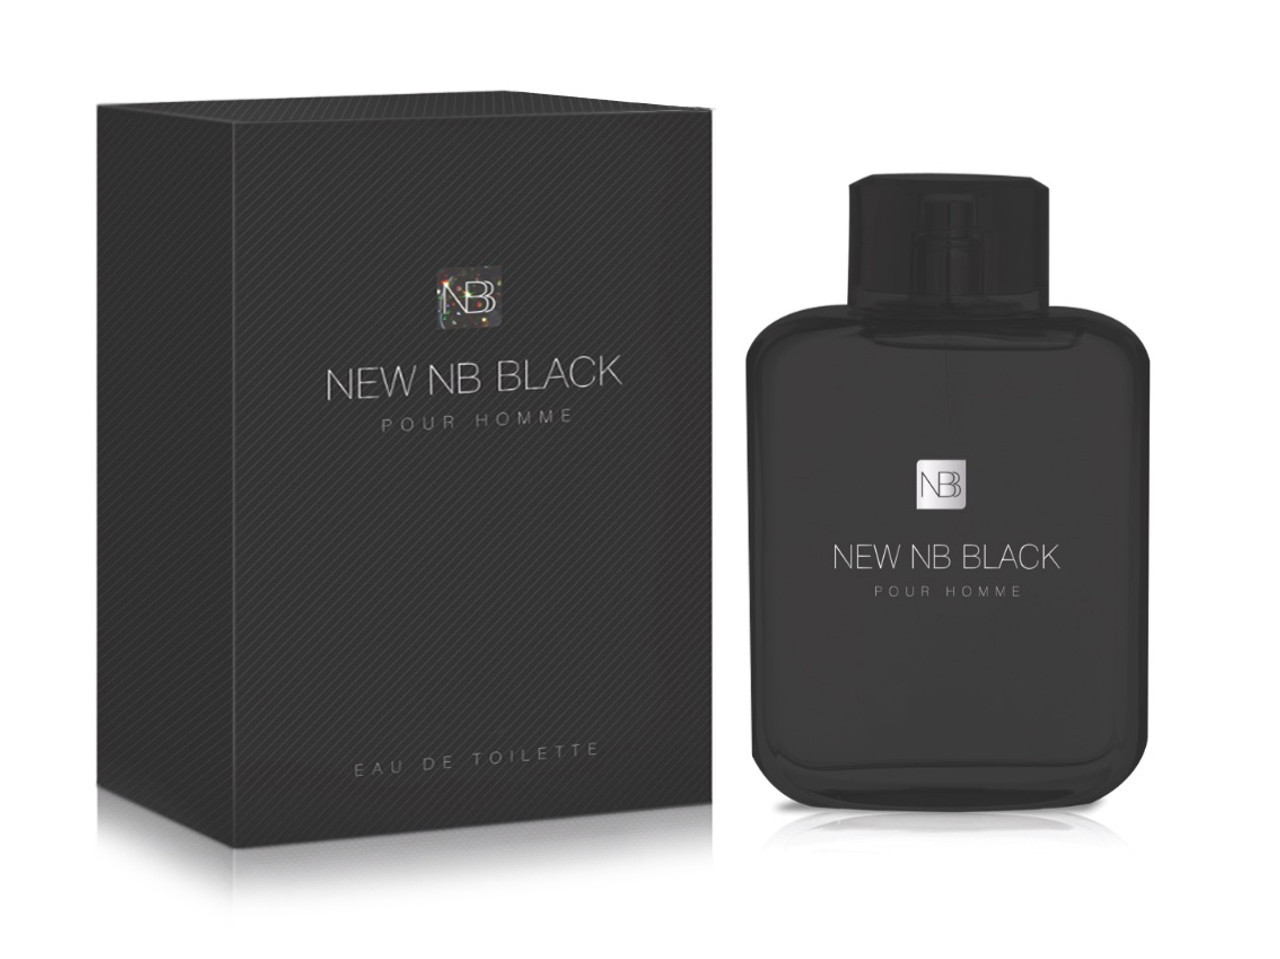 New NB BLACK POUR HOMME - Eau De Toilette for Men 100ml - Attar Mist LLC